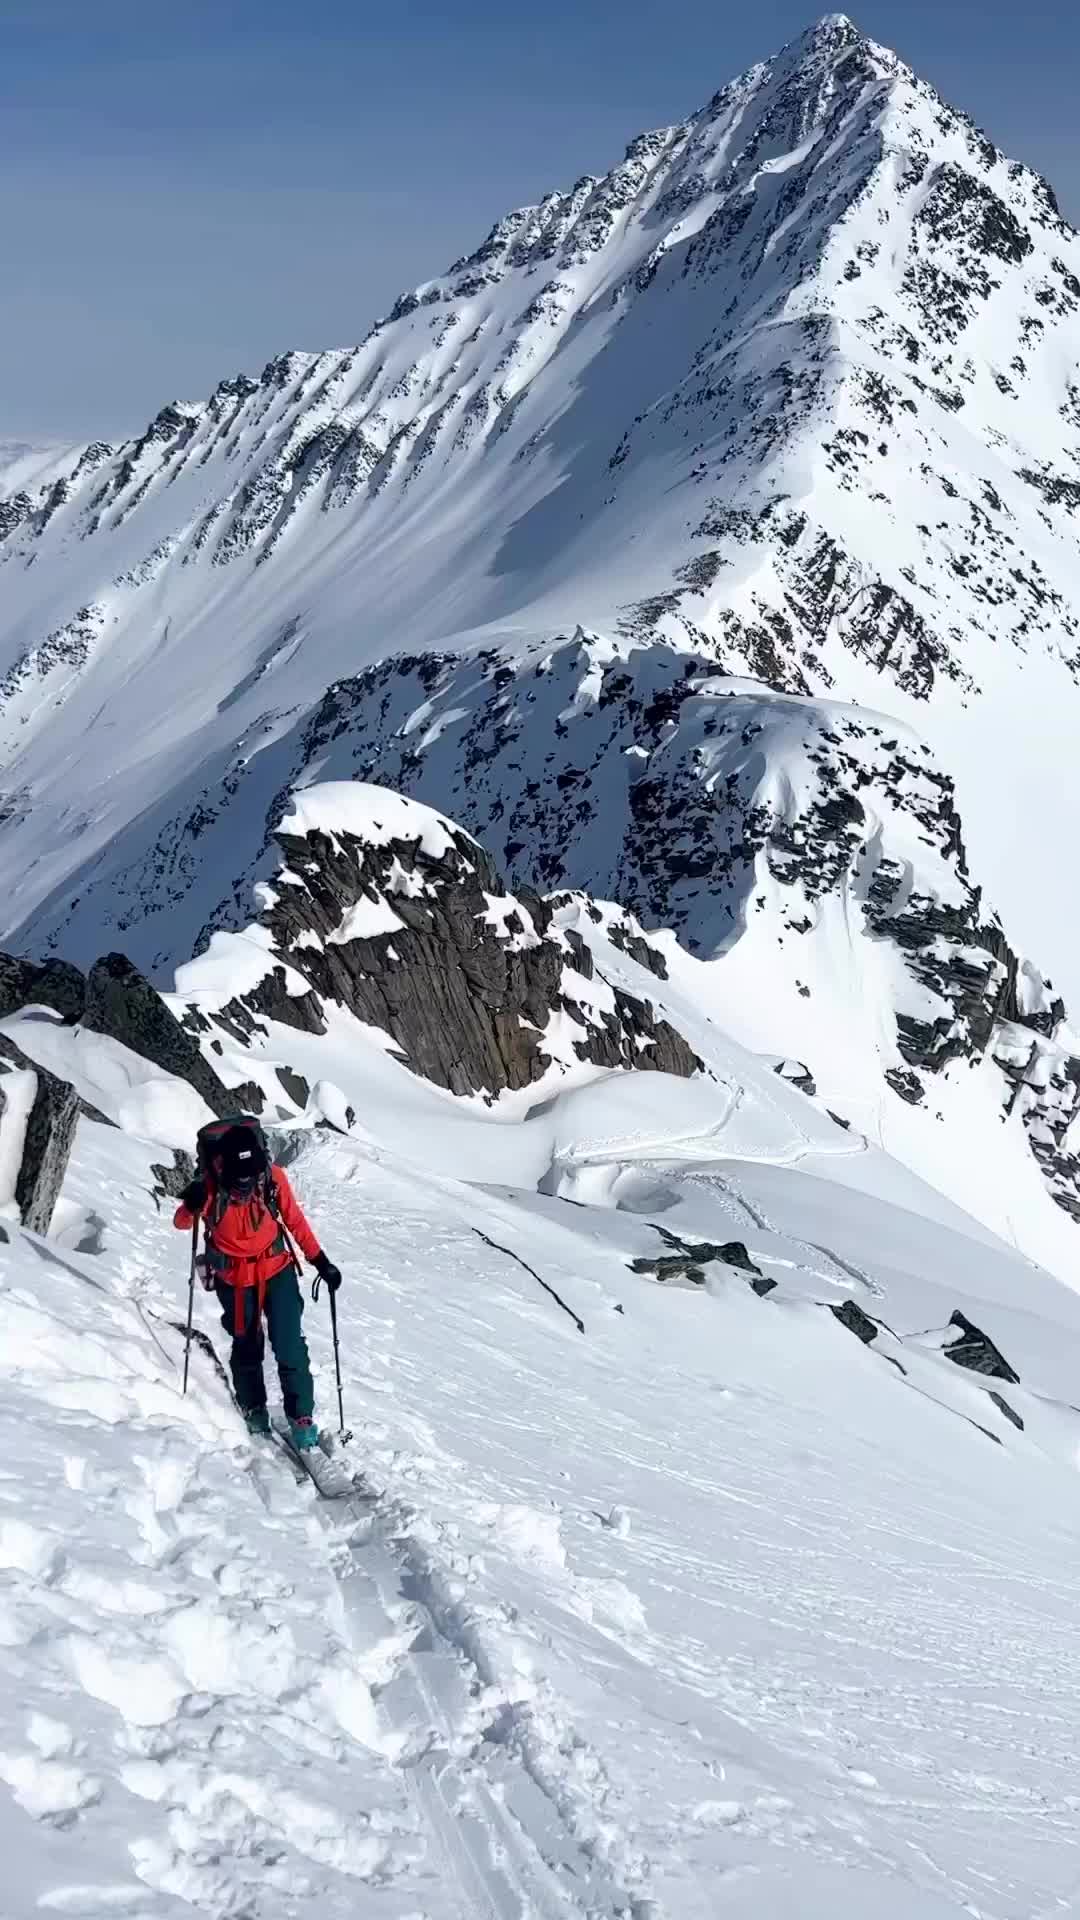 Alpine Adventures: Ski Touring in British Columbia